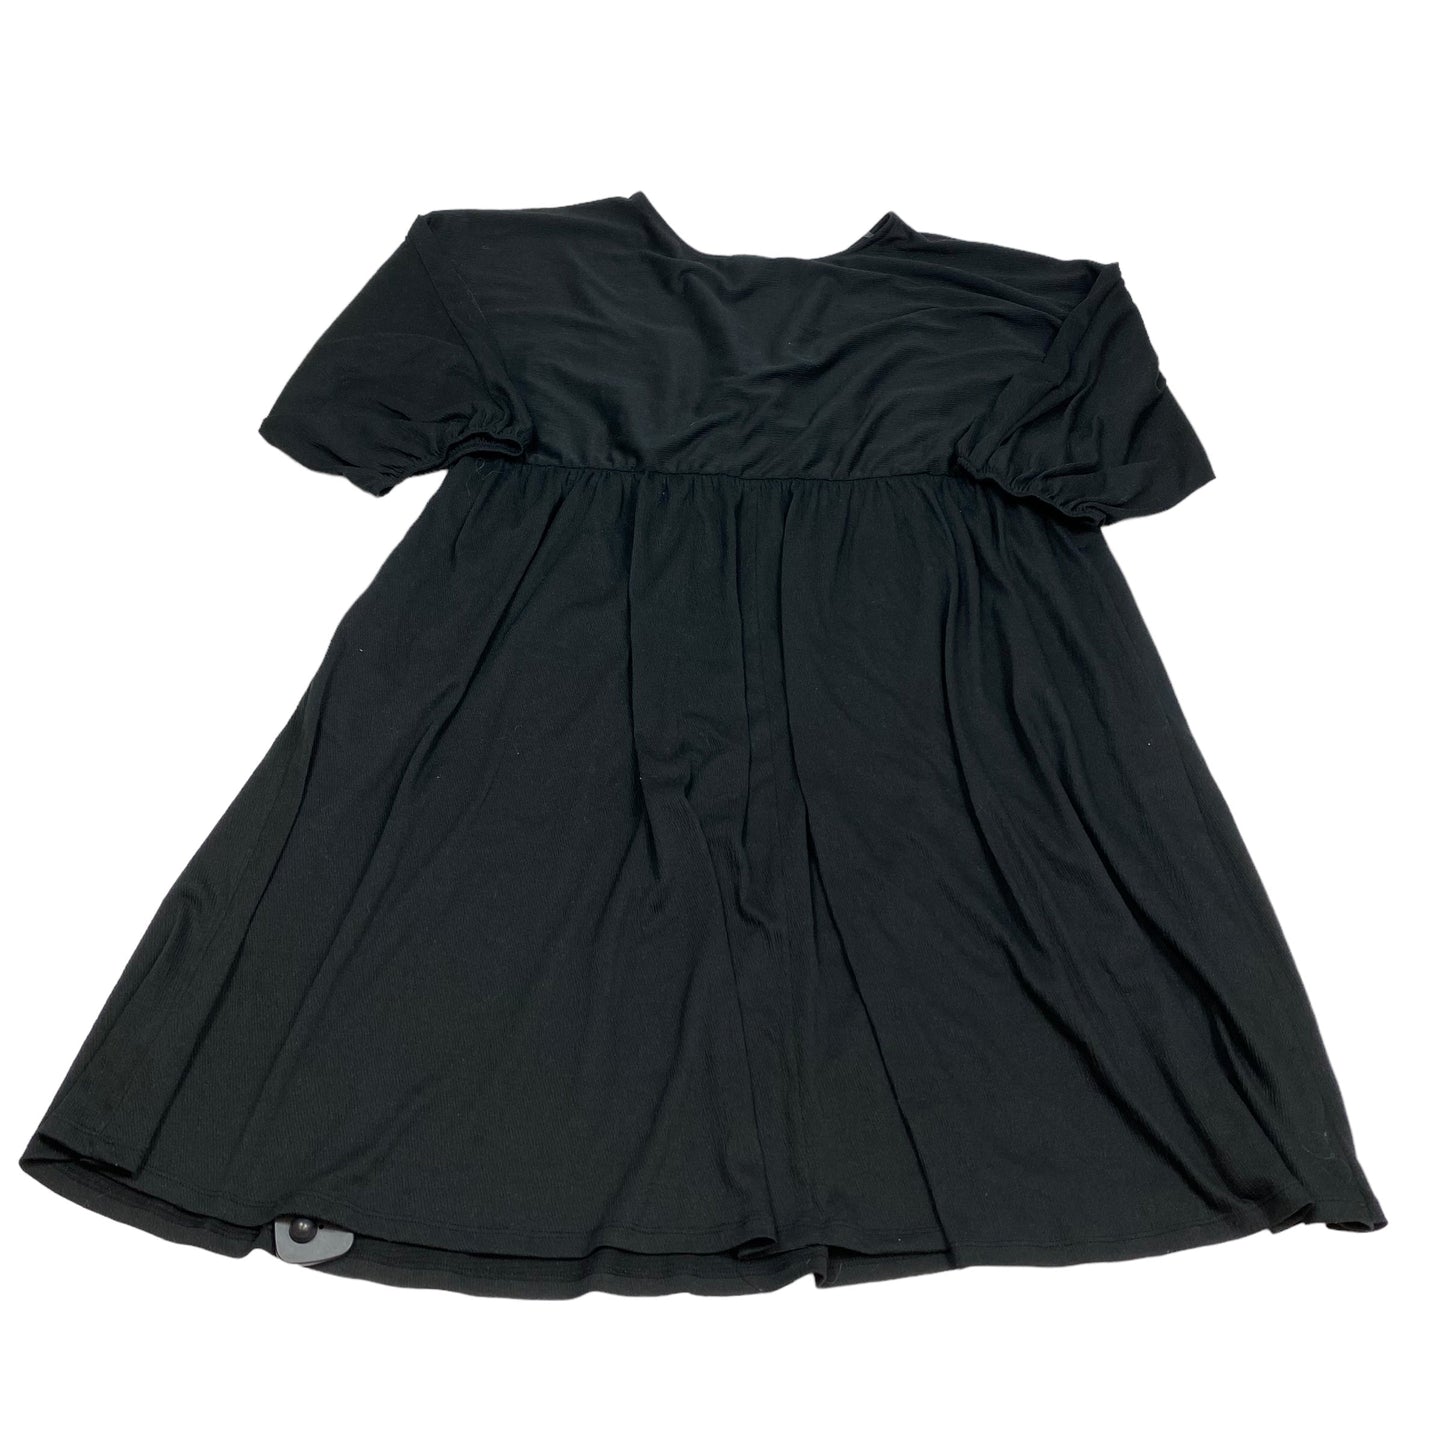 Black Dress Casual Short Ava & Viv, Size 3x